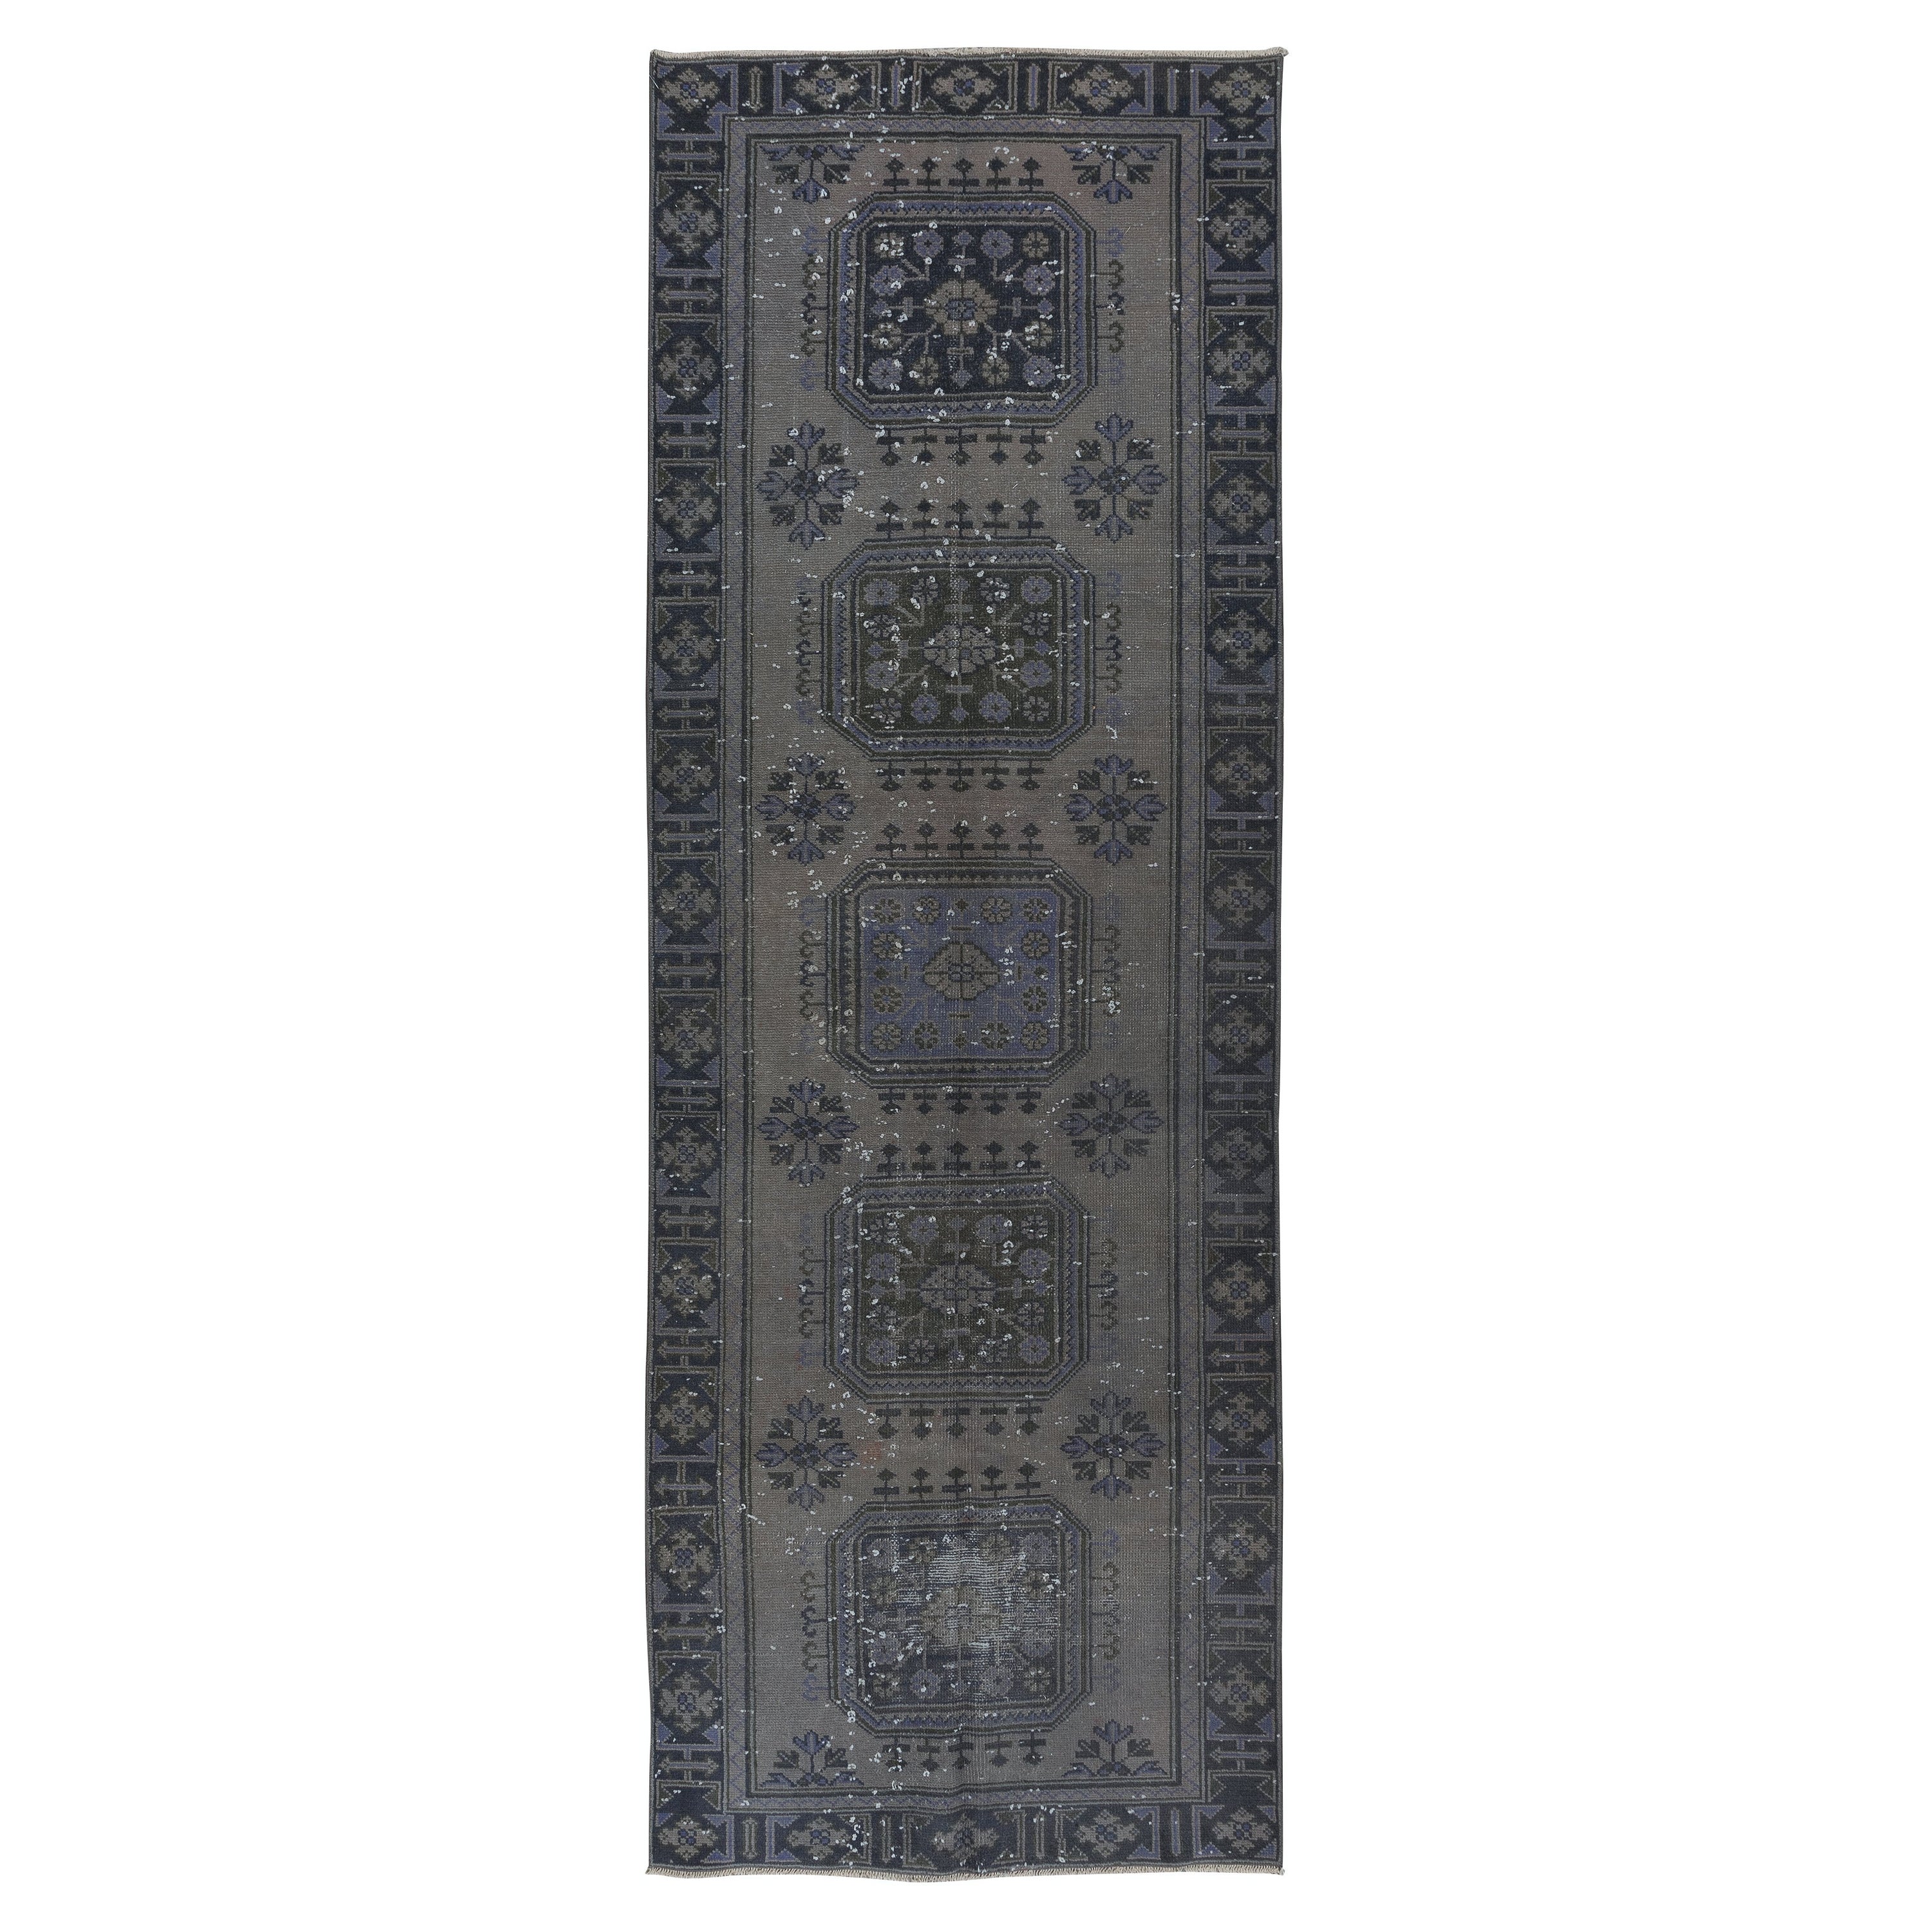 4.2x11.6 Ft Turkish Runner Rug, Handmade Corridor Carpet in Gray, Black & Purple For Sale